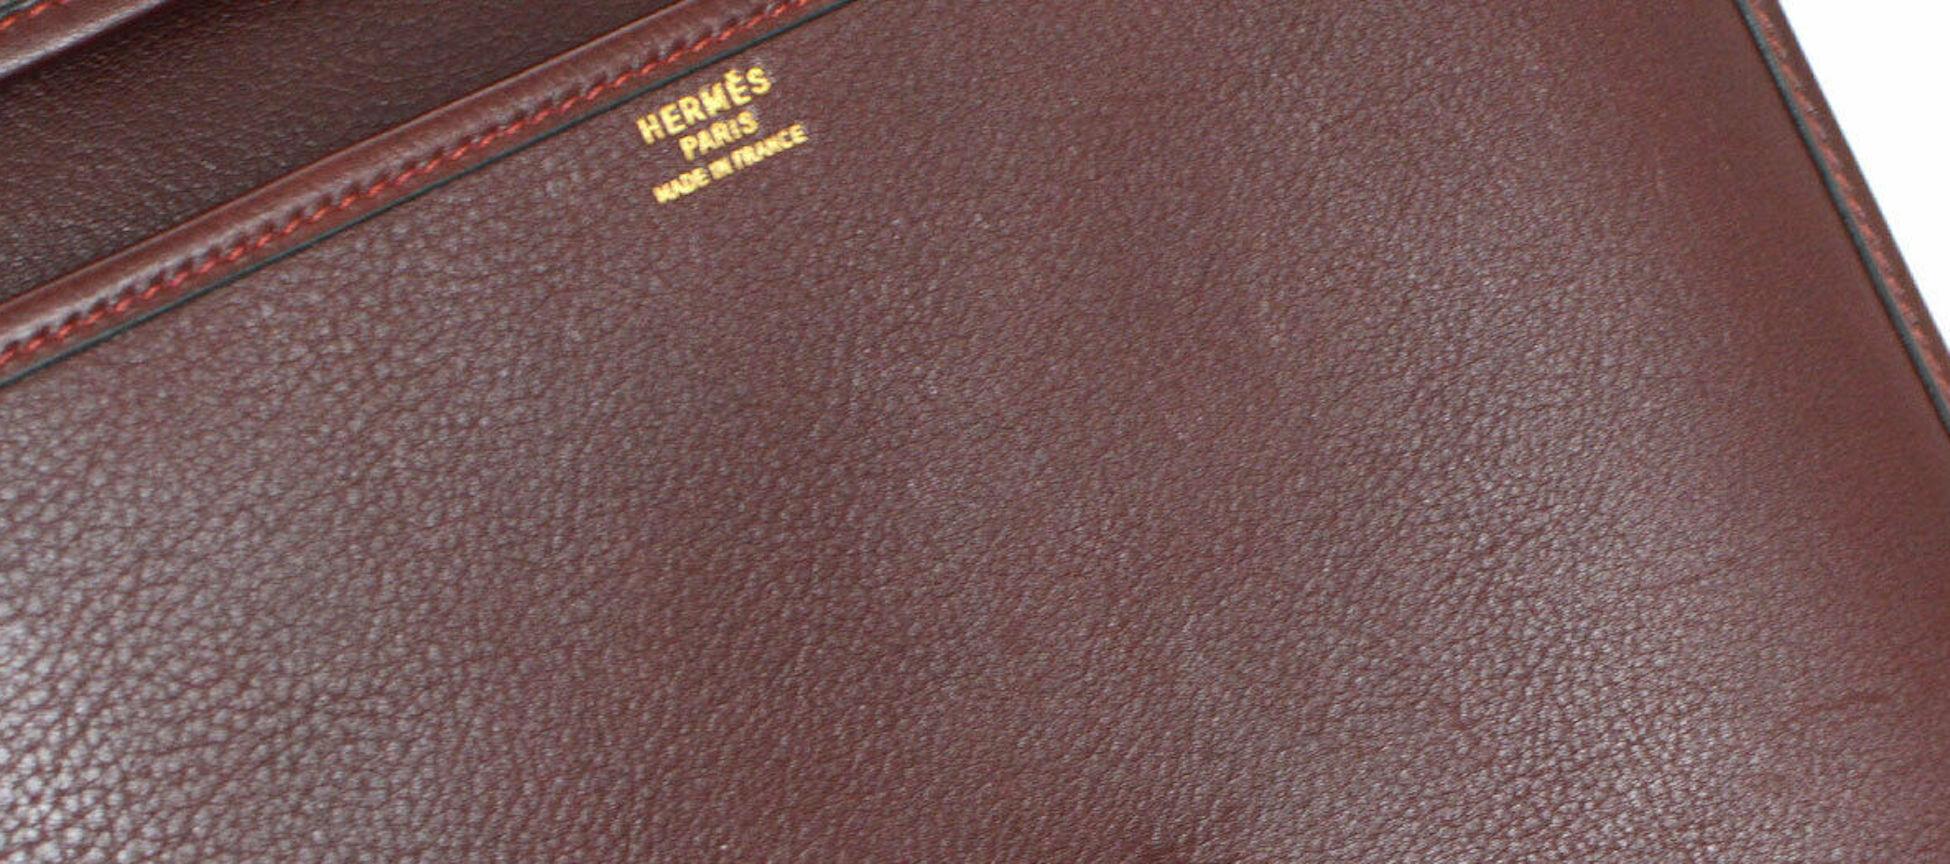 Hermes Wine Burgundy Leather Gold Crossbody Carryall Shoulder Flap Bag 1